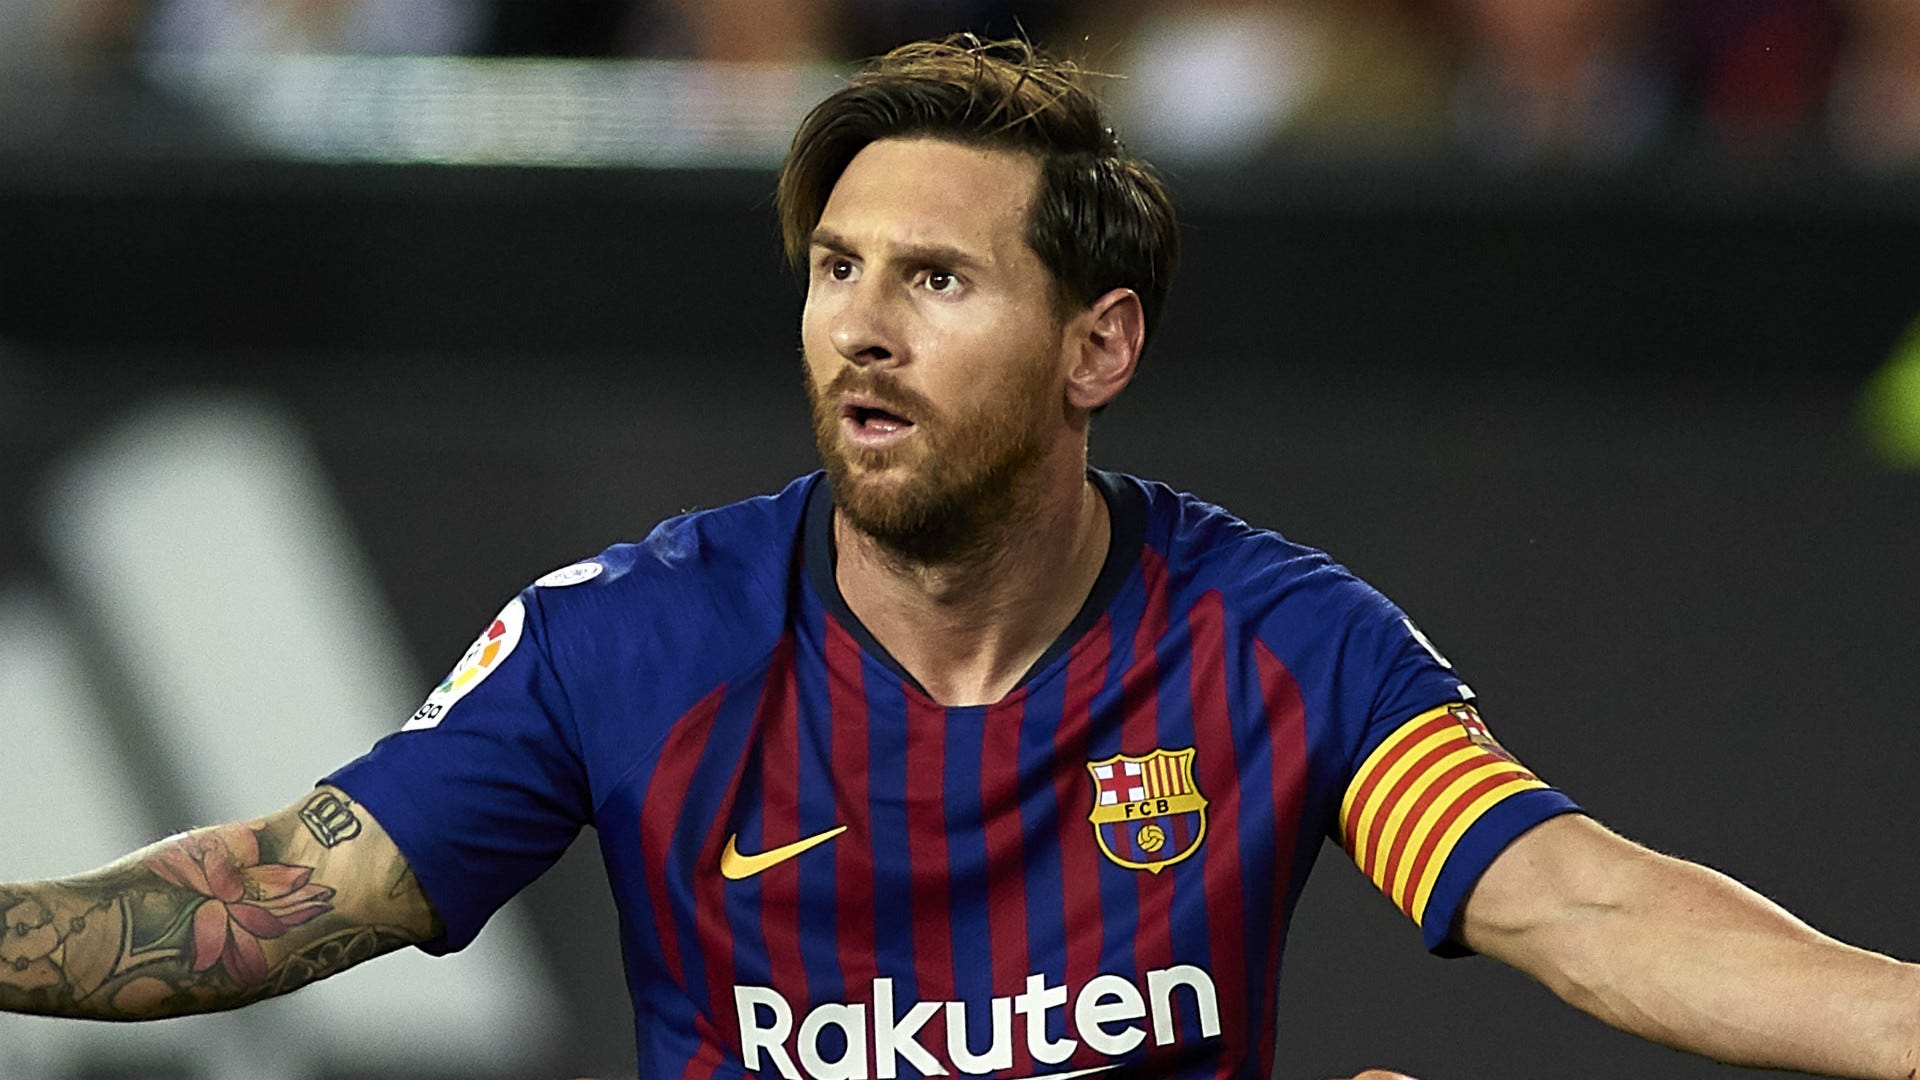 Một hình ảnh về Messi sẽ khiến bạn cảm thấy nóng lòng và hào hứng bởi vì những kỹ năng siêu phàm của anh ta trên sân cỏ. Nếu bạn là một fan hâm mộ của bóng đá, hãy xem hình ảnh này và tận hưởng cảm giác của một ngôi sao bóng đá thực sự.